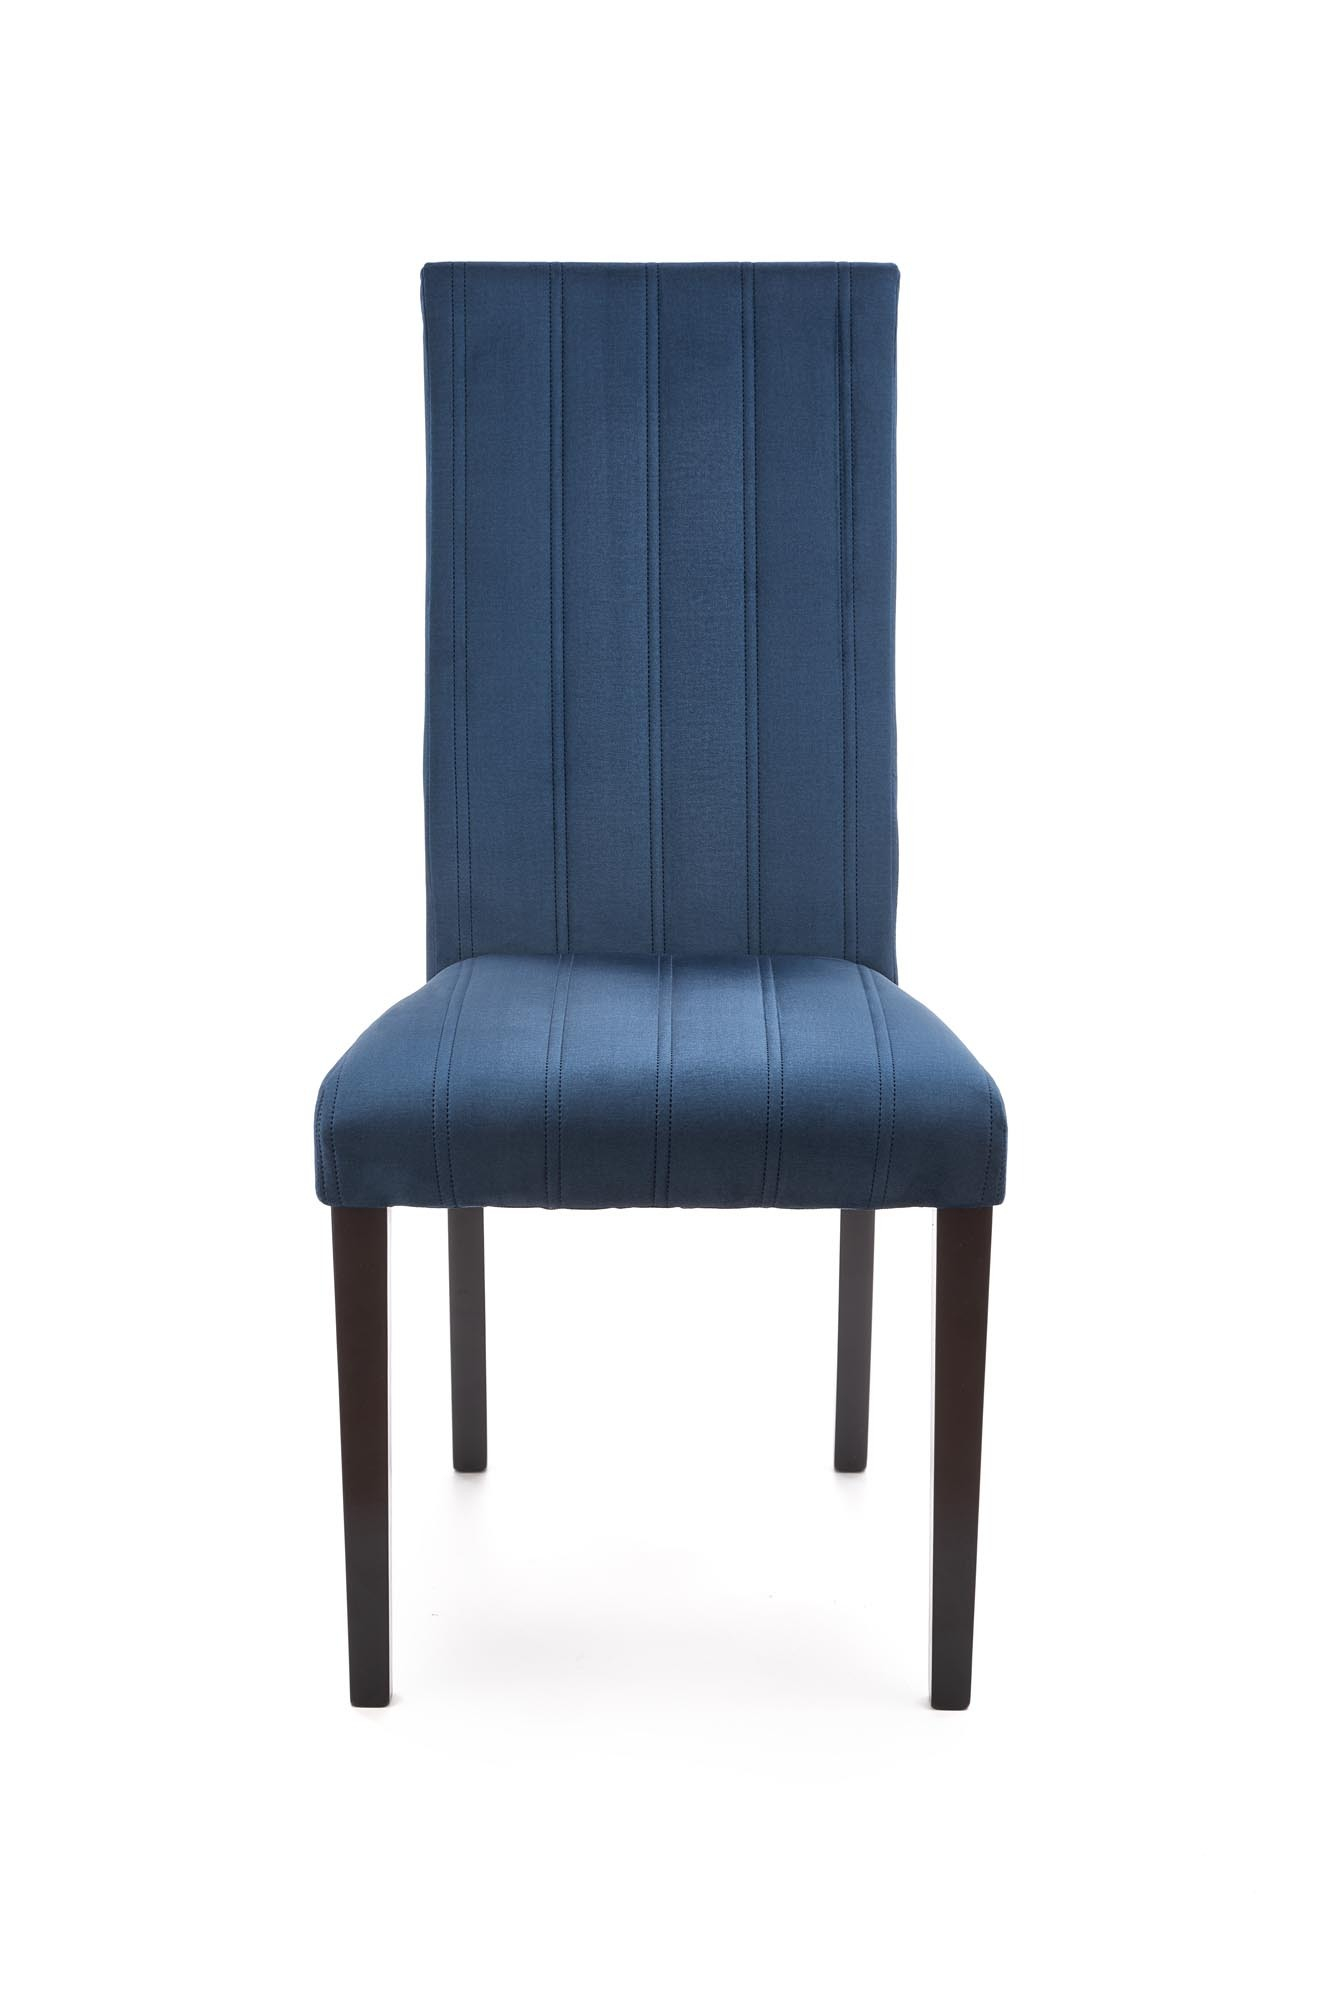 DIEGO 2 krzesło czarny / tap. velvet pikowany Pasy - MONOLITH 77 (granatowy)